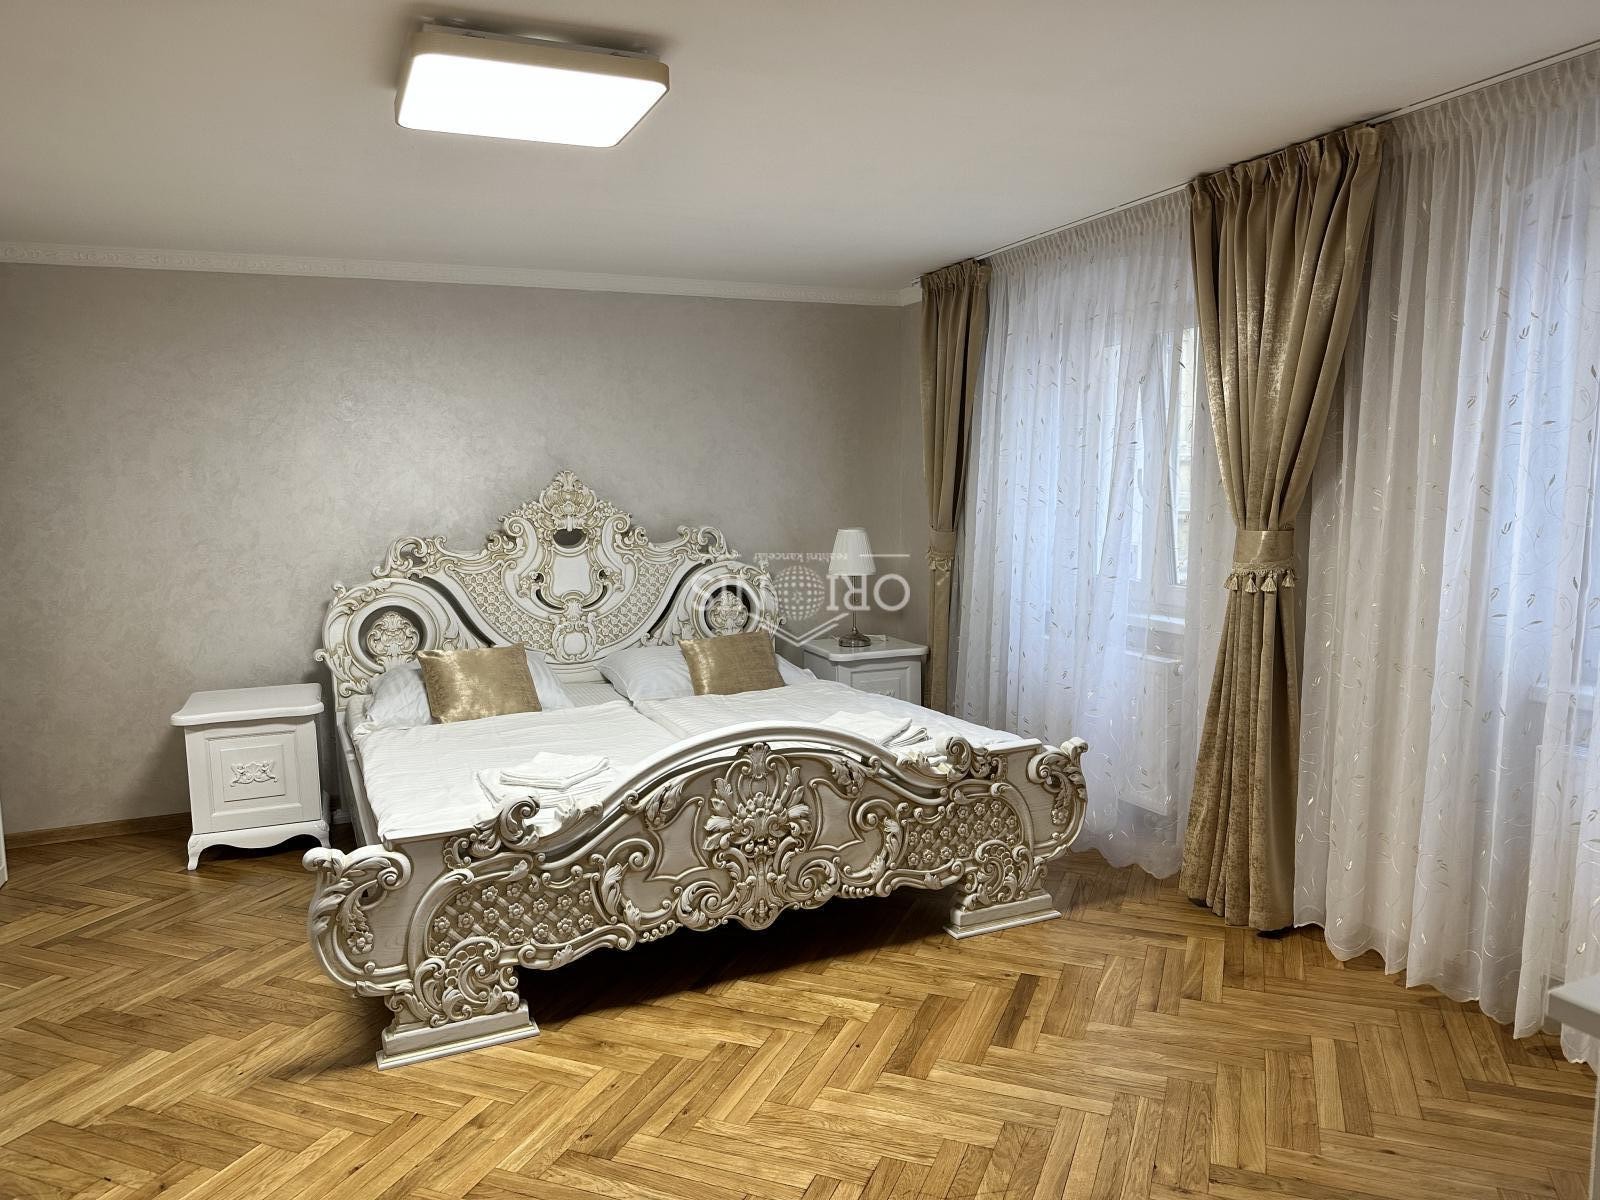 Prodej domu ubytovací zařízení-6 apartmánů, Zámecký Vrch. Karlovy Vary 